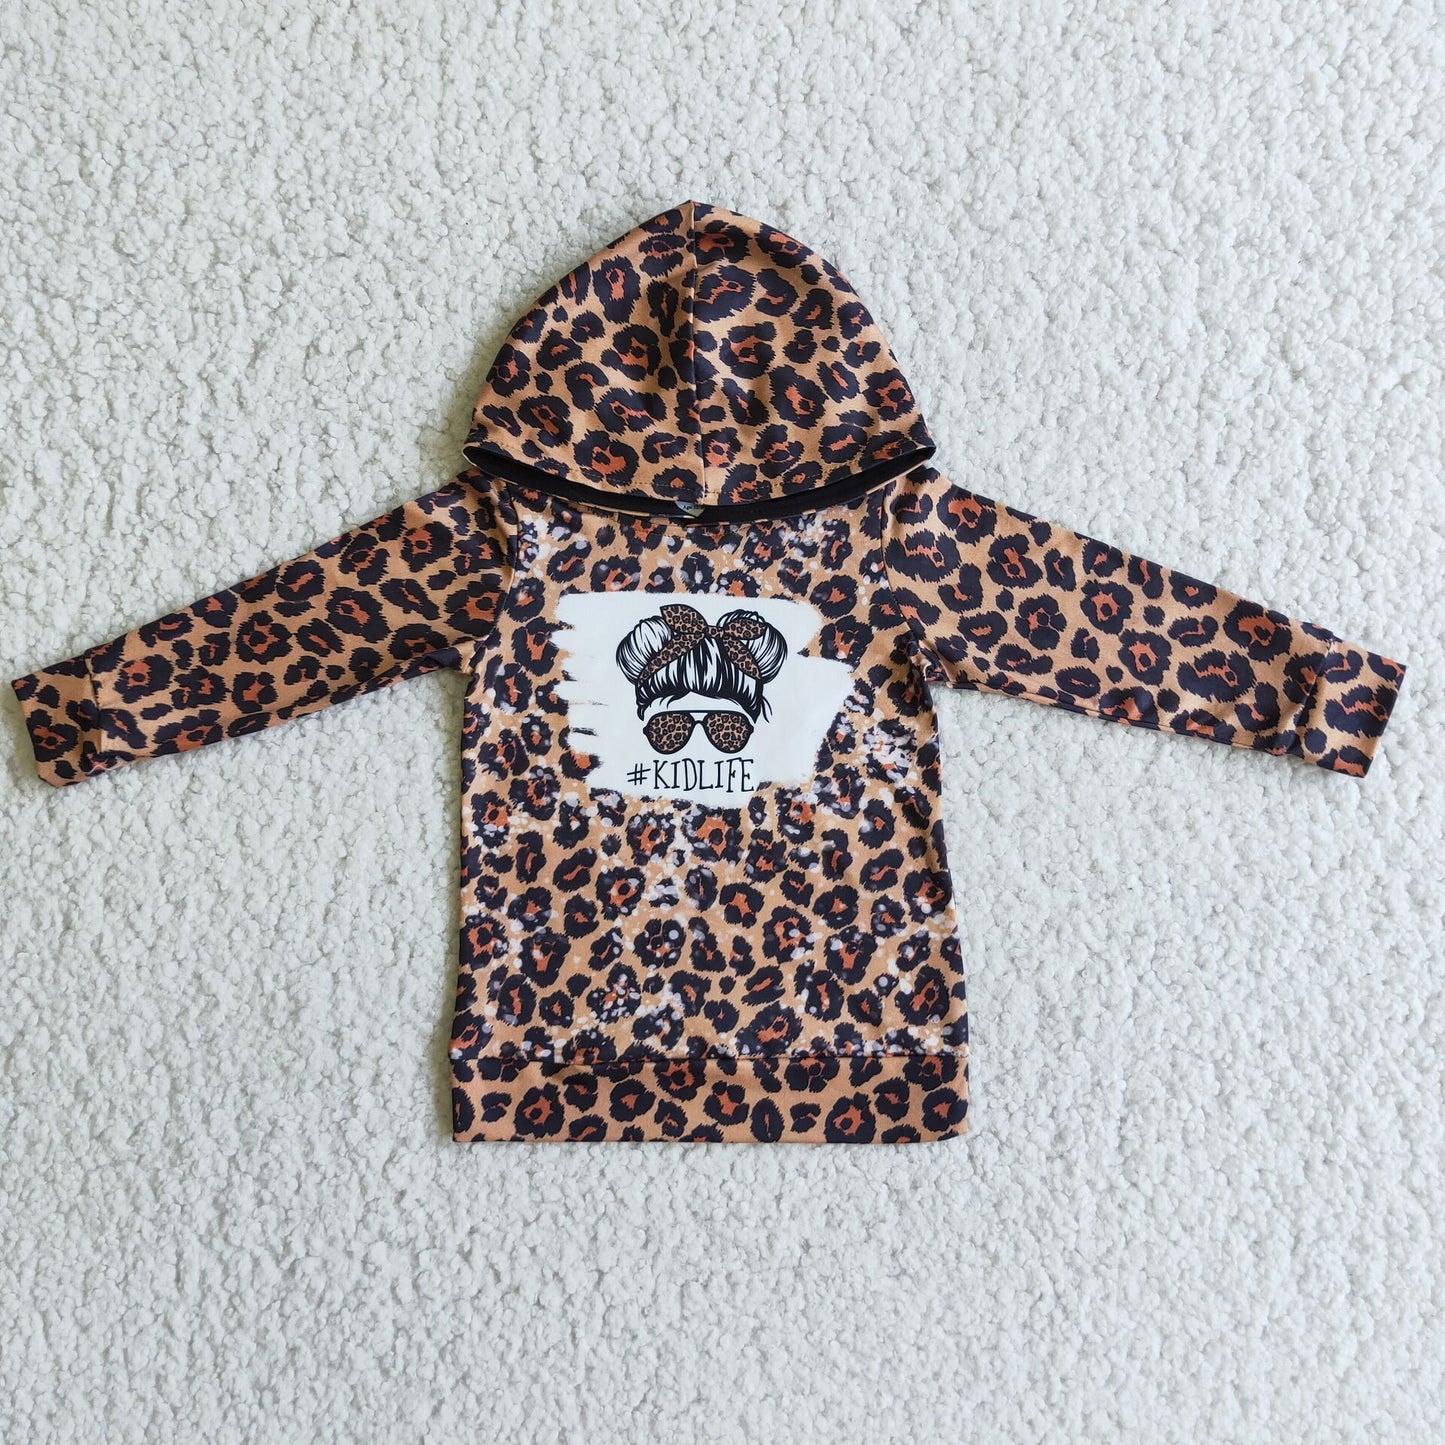 Kidlife Leopard Hoodie Top